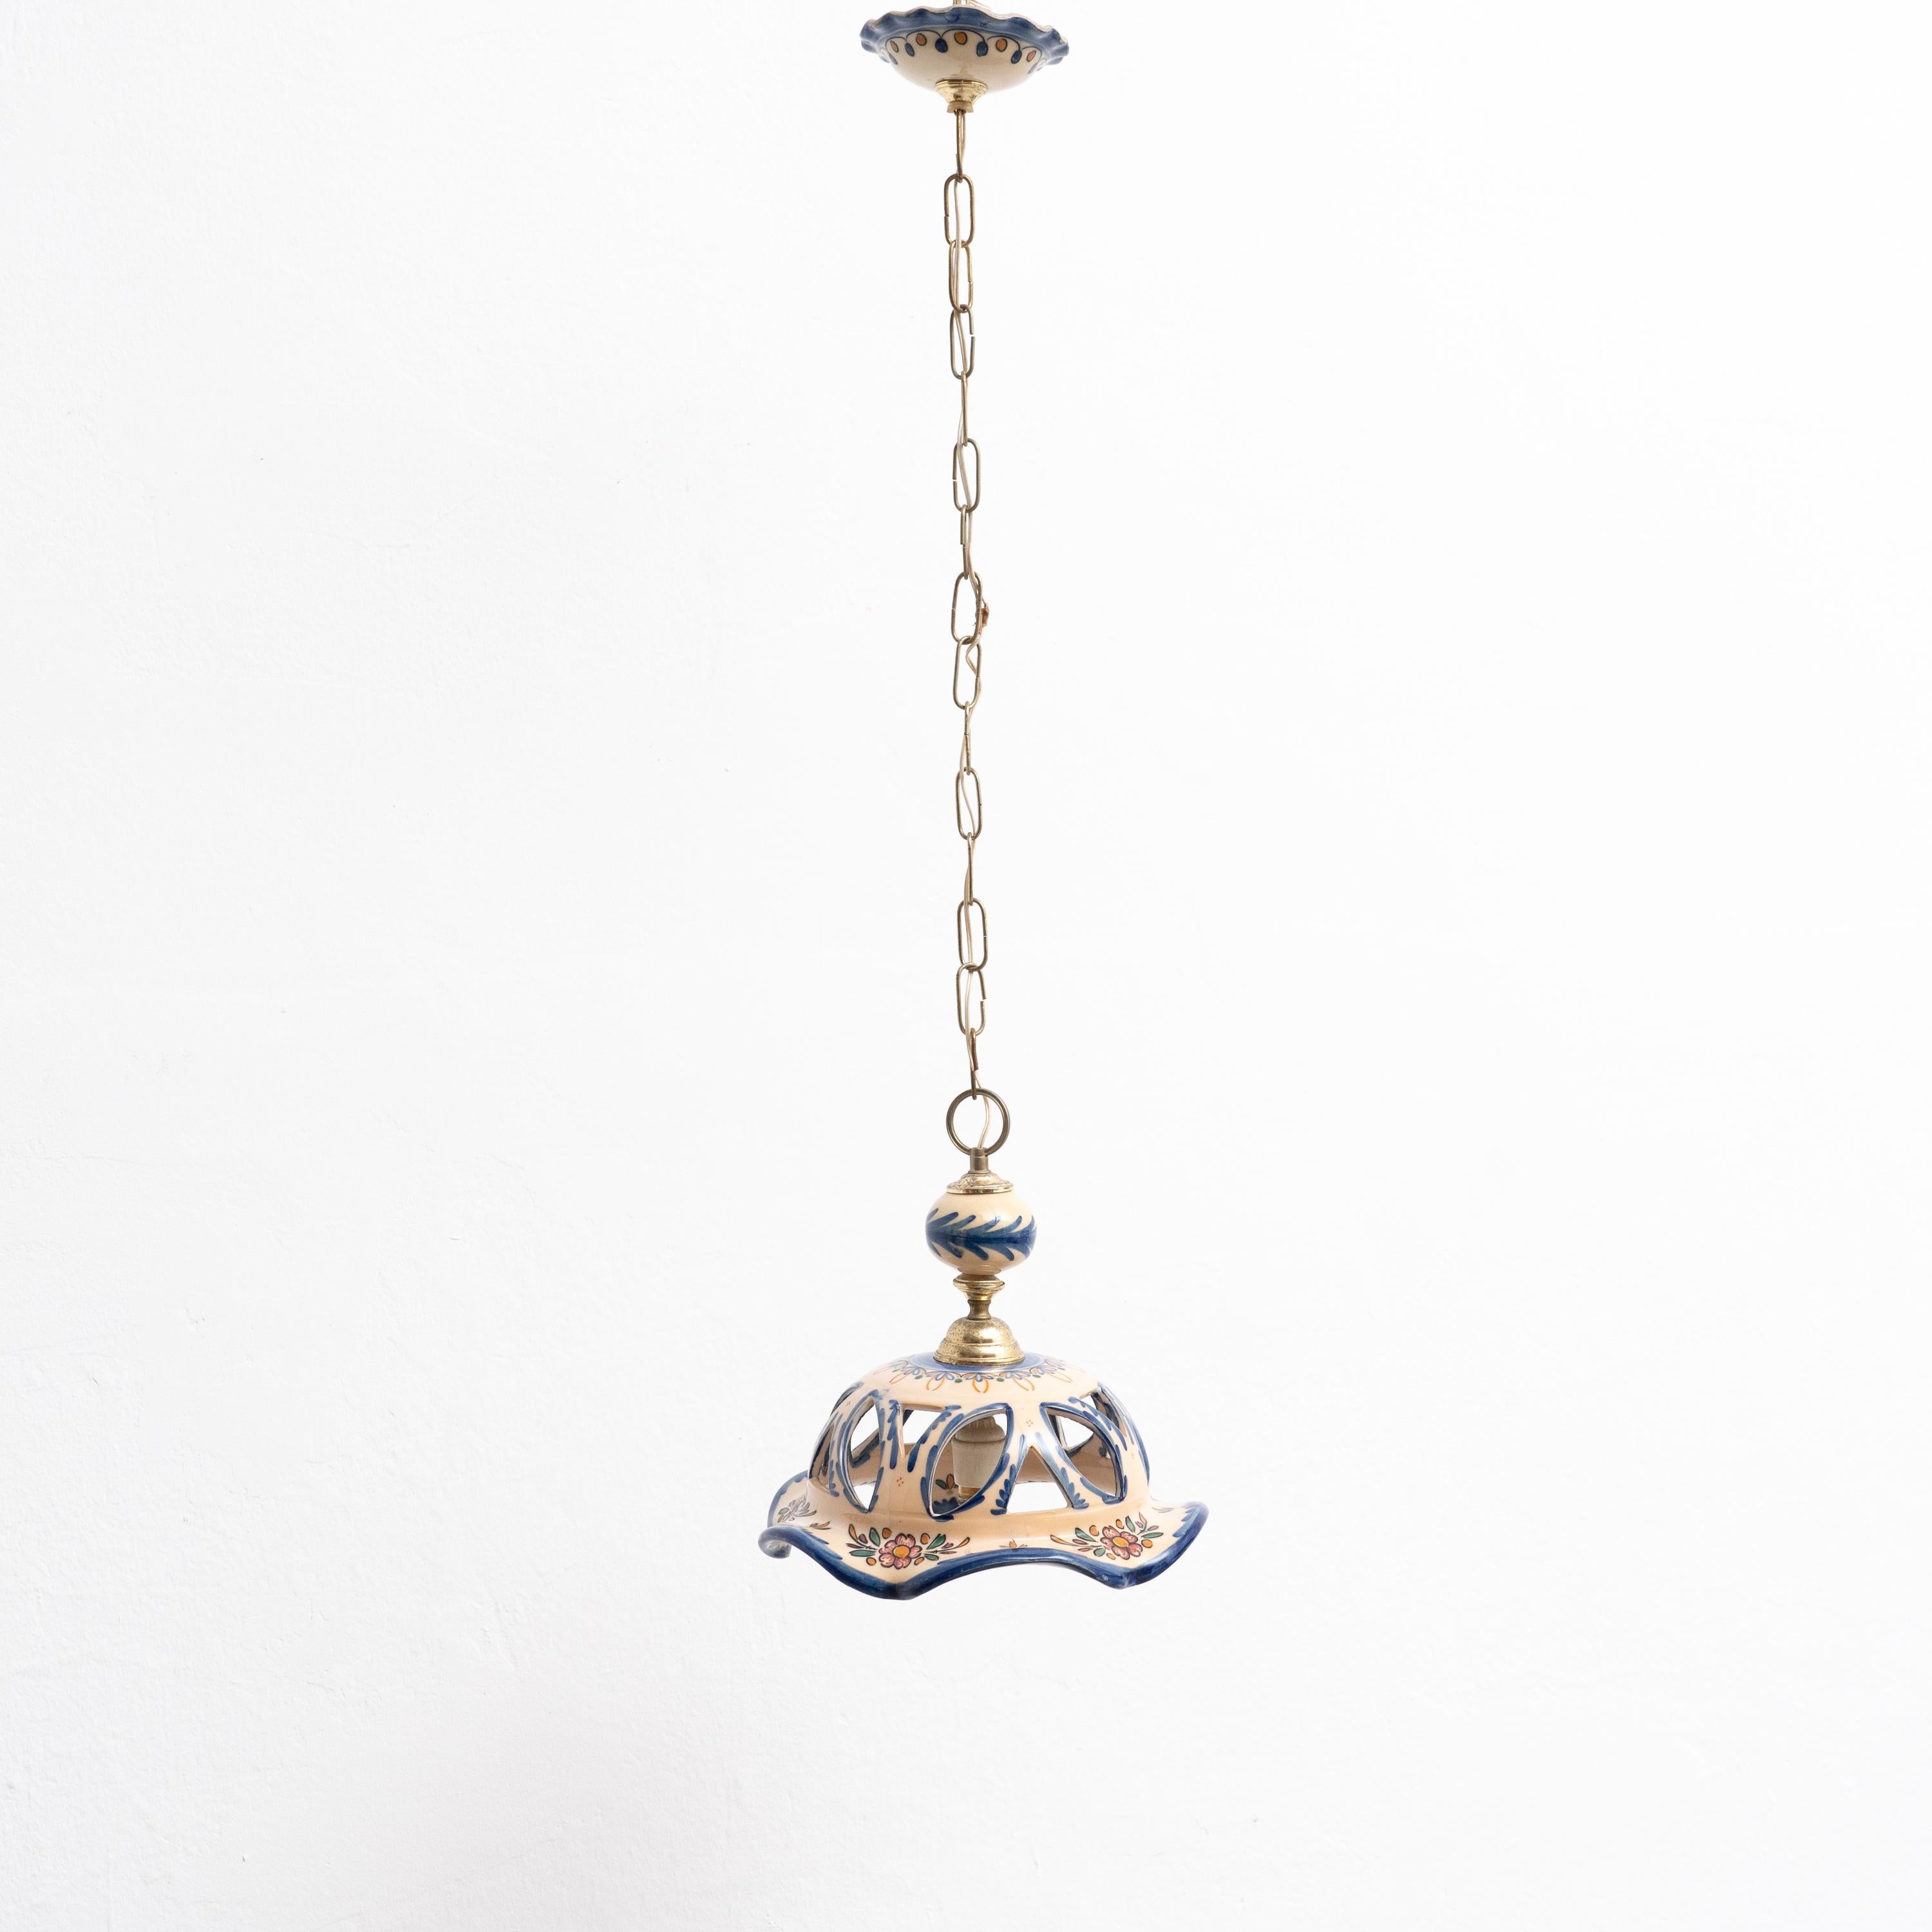 Spanish Antique Ceramic Ceiling Lamp, circa 1980